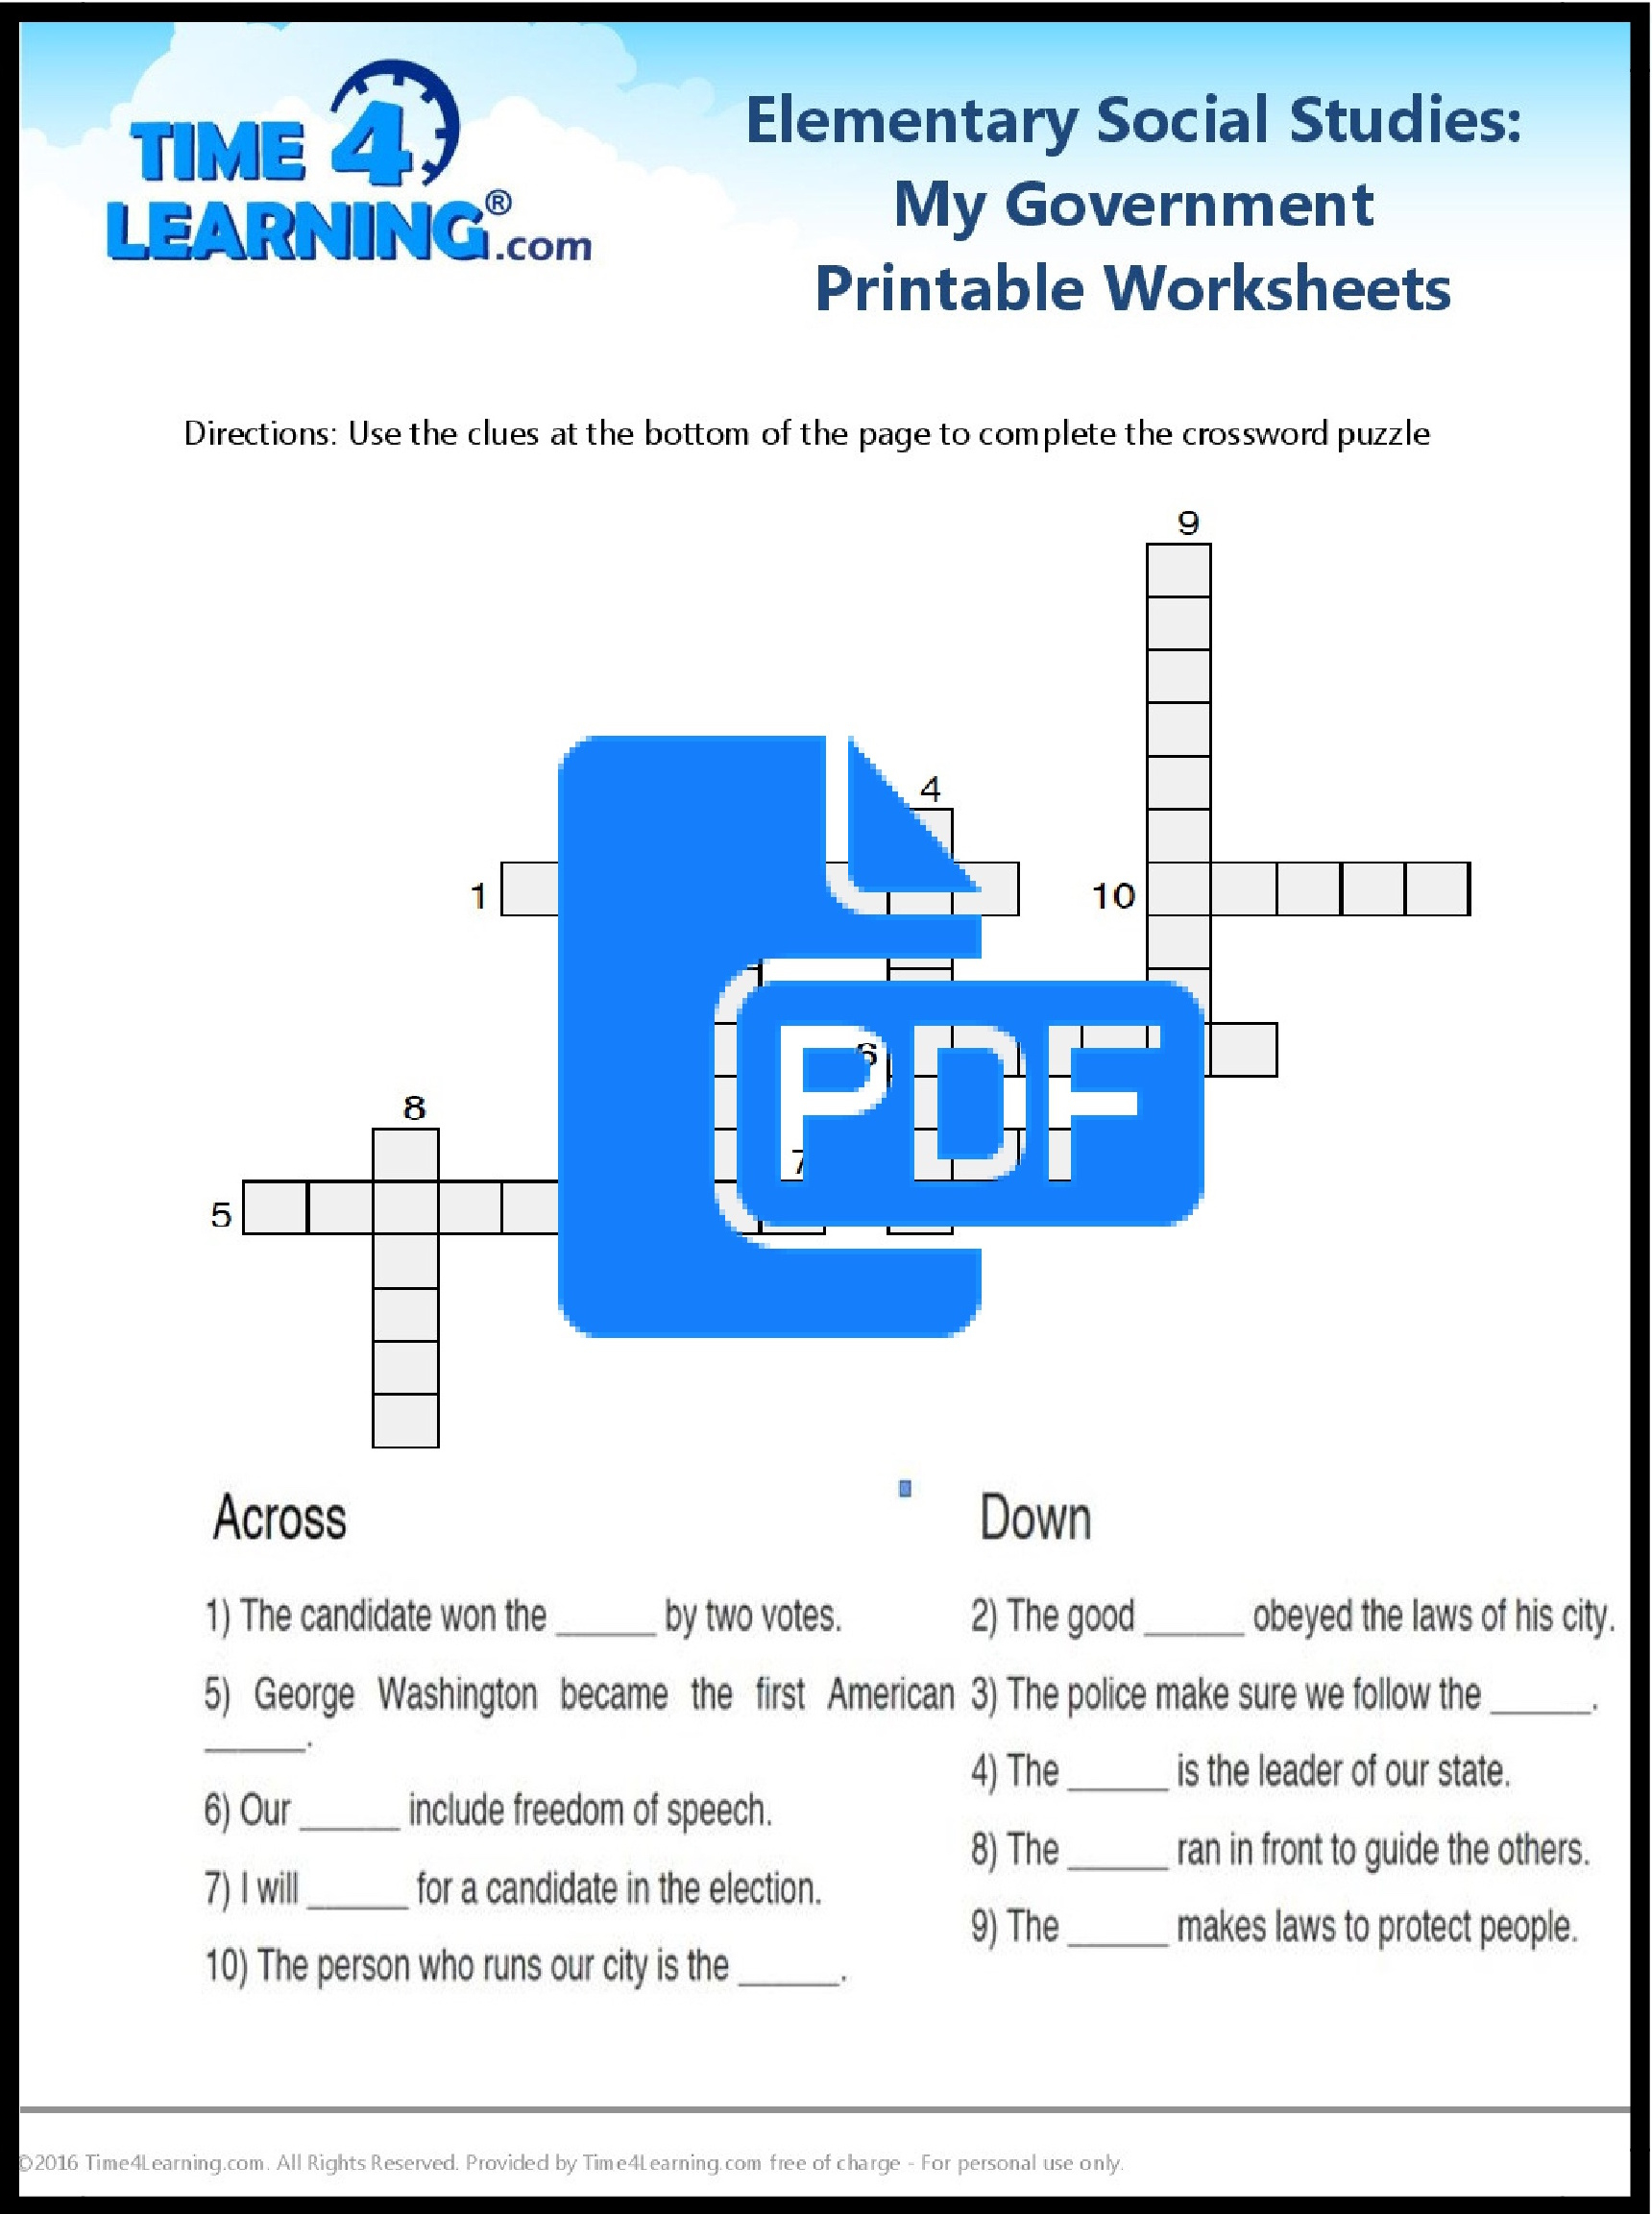 Free Printable: Elementary Social Studies Worksheet | Time4Learning | Elementary Social Studies Worksheets Printable